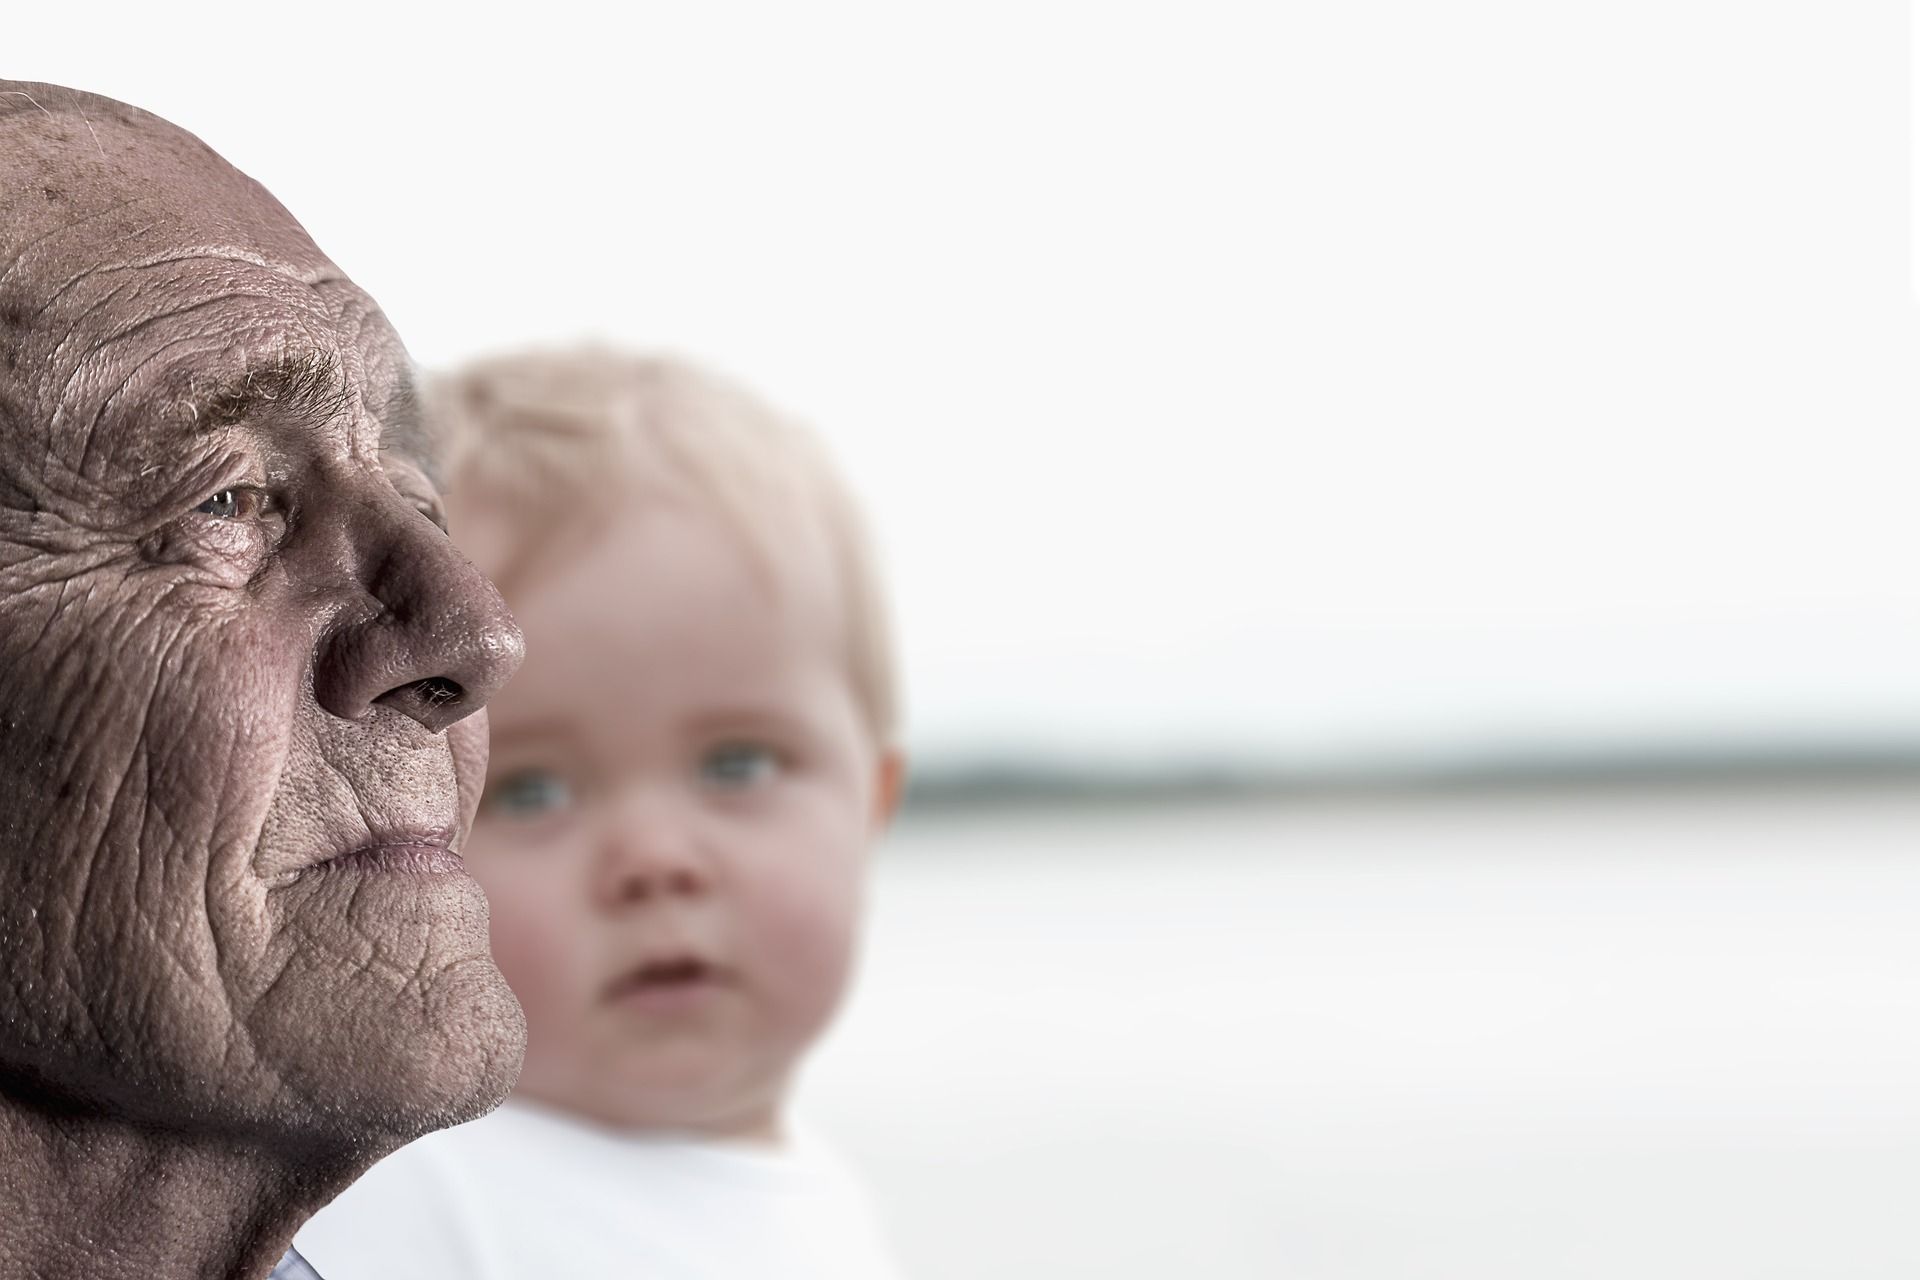 un visage d'enfant regarde le visage d'une personne âgée - Image par Gerd Altmann de https://pixabay.com/fr/photos/homme-enfant-b%C3%A9b%C3%A9-grand-p%C3%A8re-vue-3552247/